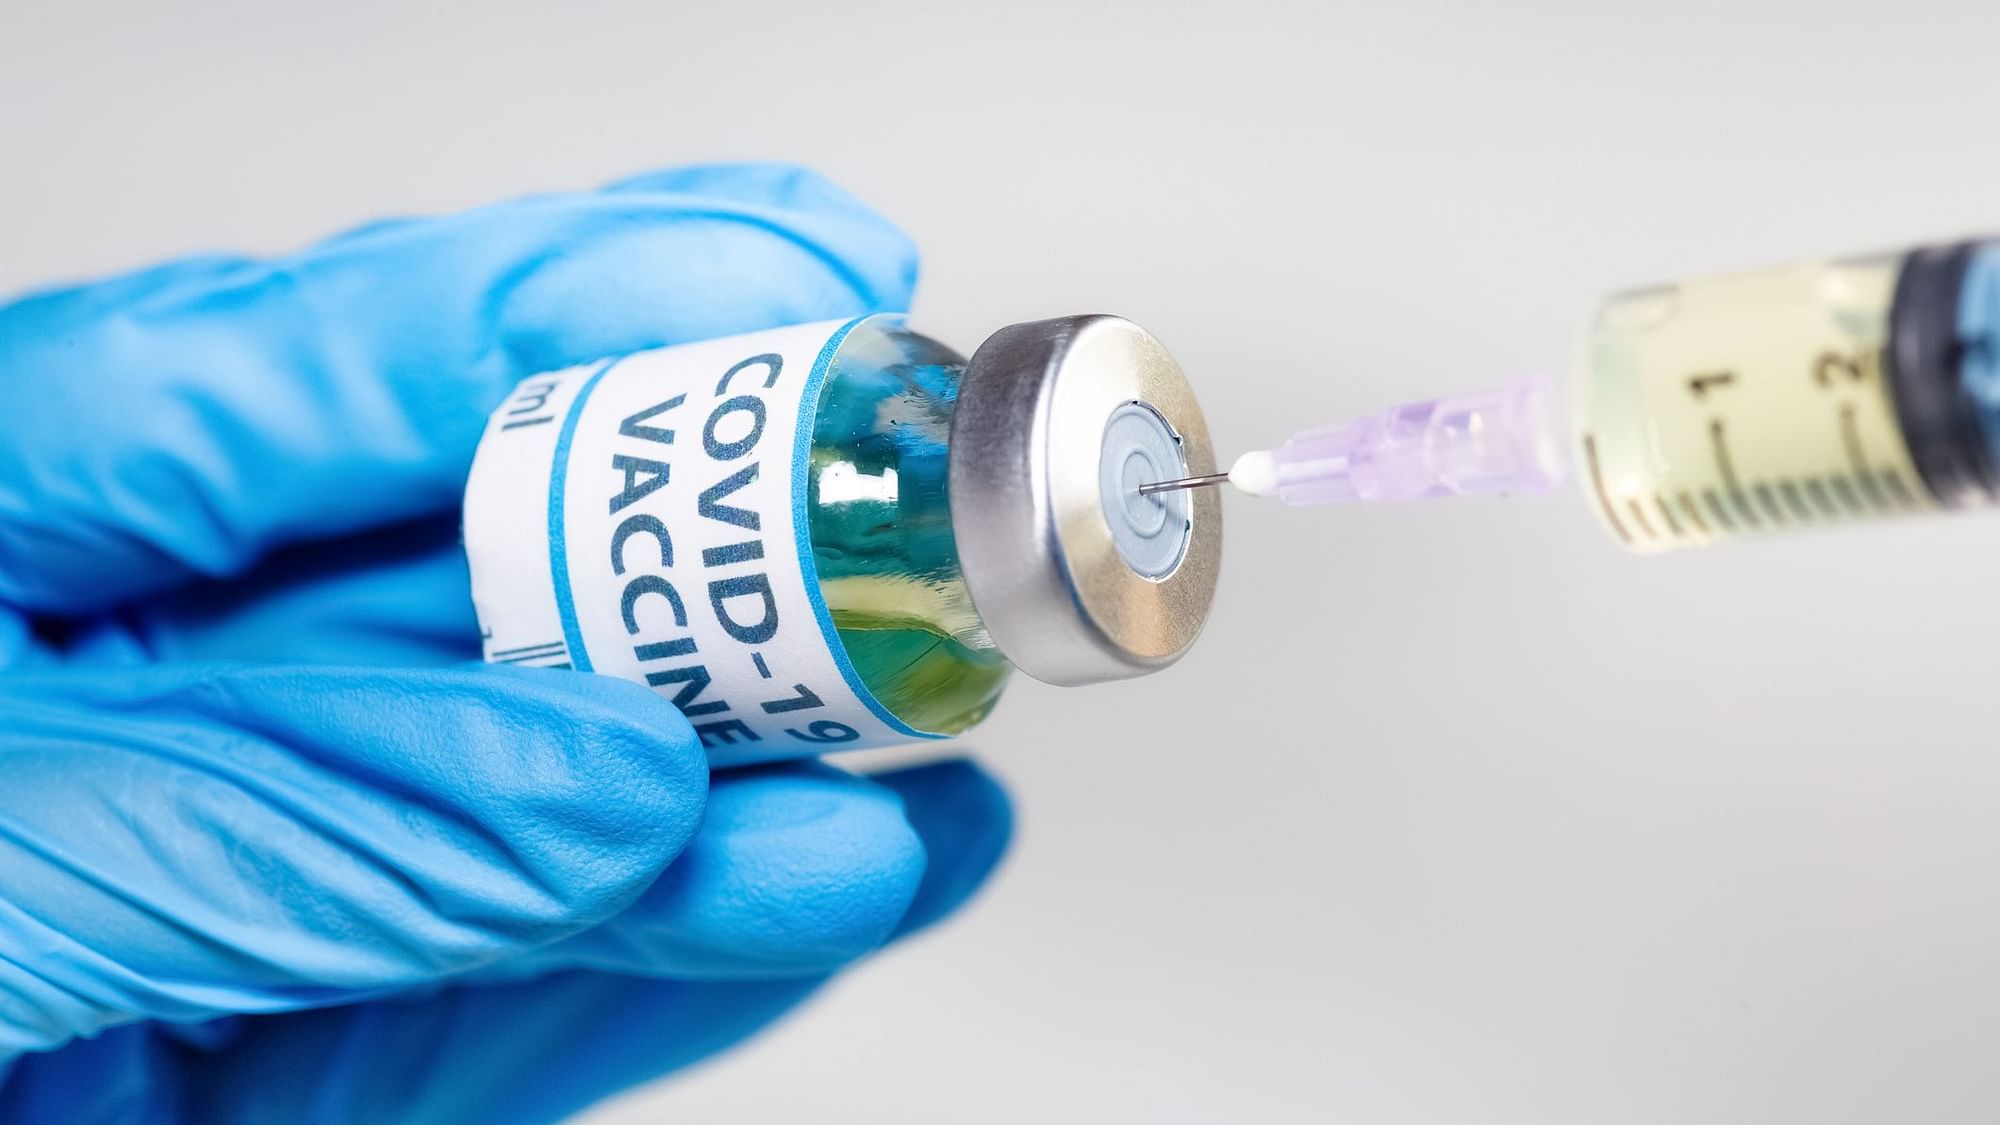 एस्ट्राजेनेका के साथ मिलकर वैक्सीन बना रहा है सीरम इंस्टीट्यूट